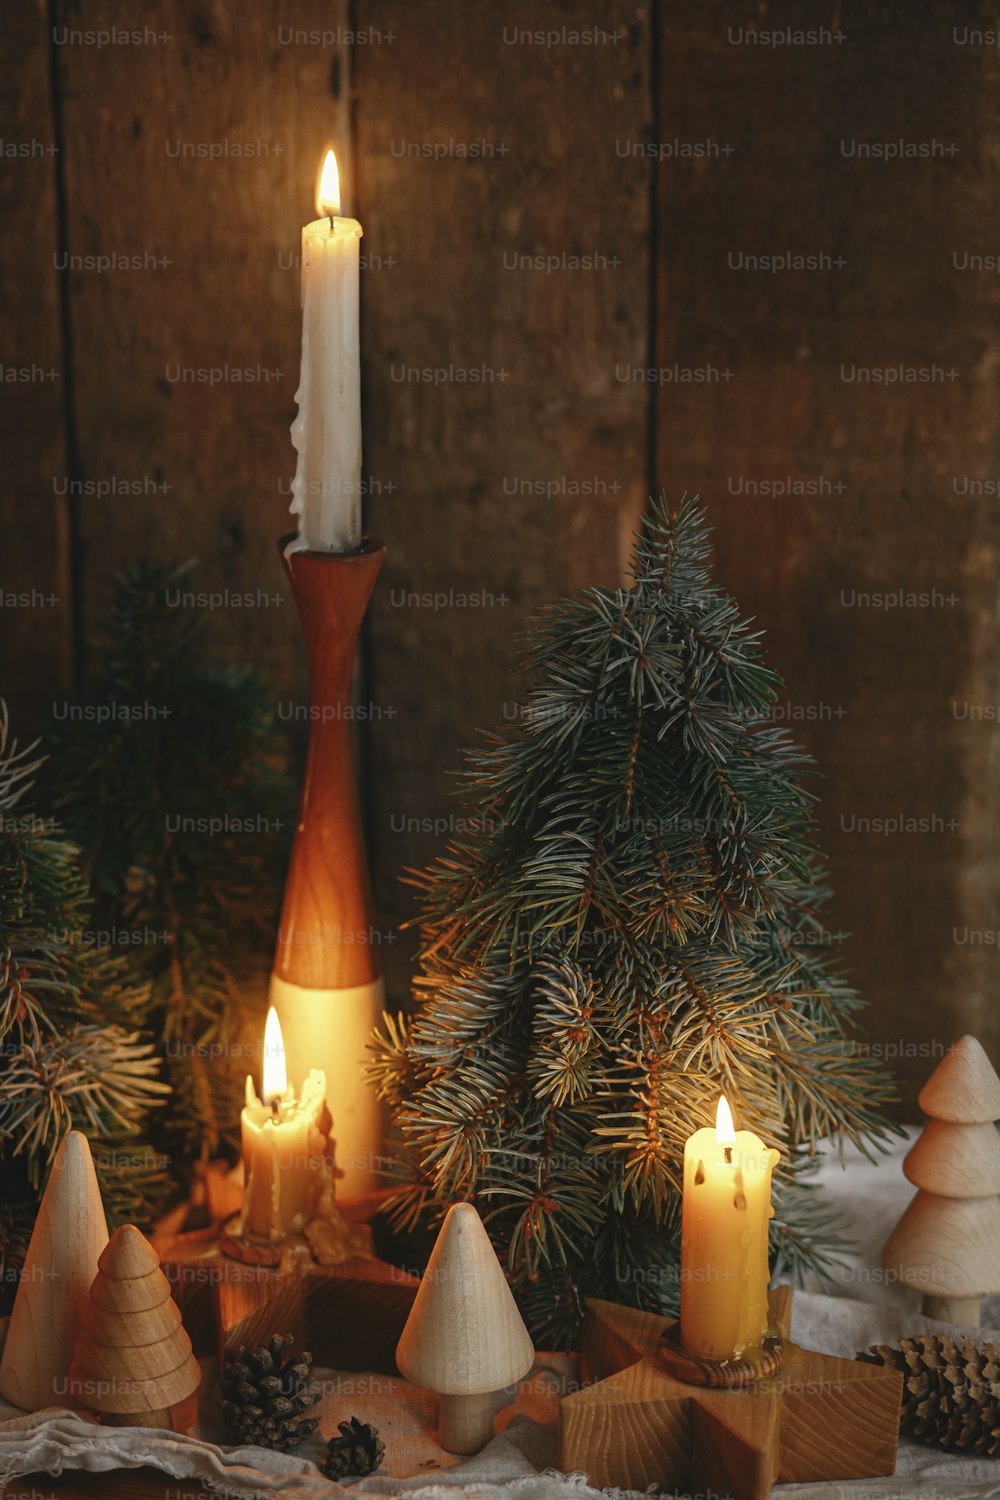 Weihnachtsadvent. Stilvoll brennende Weihnachtskerzen, Pinien und Zapfen moderne Dekorationen auf rustikalem alten Holzhintergrund im abendlichen skandinavischen Raum. Atmosphärischer Moment